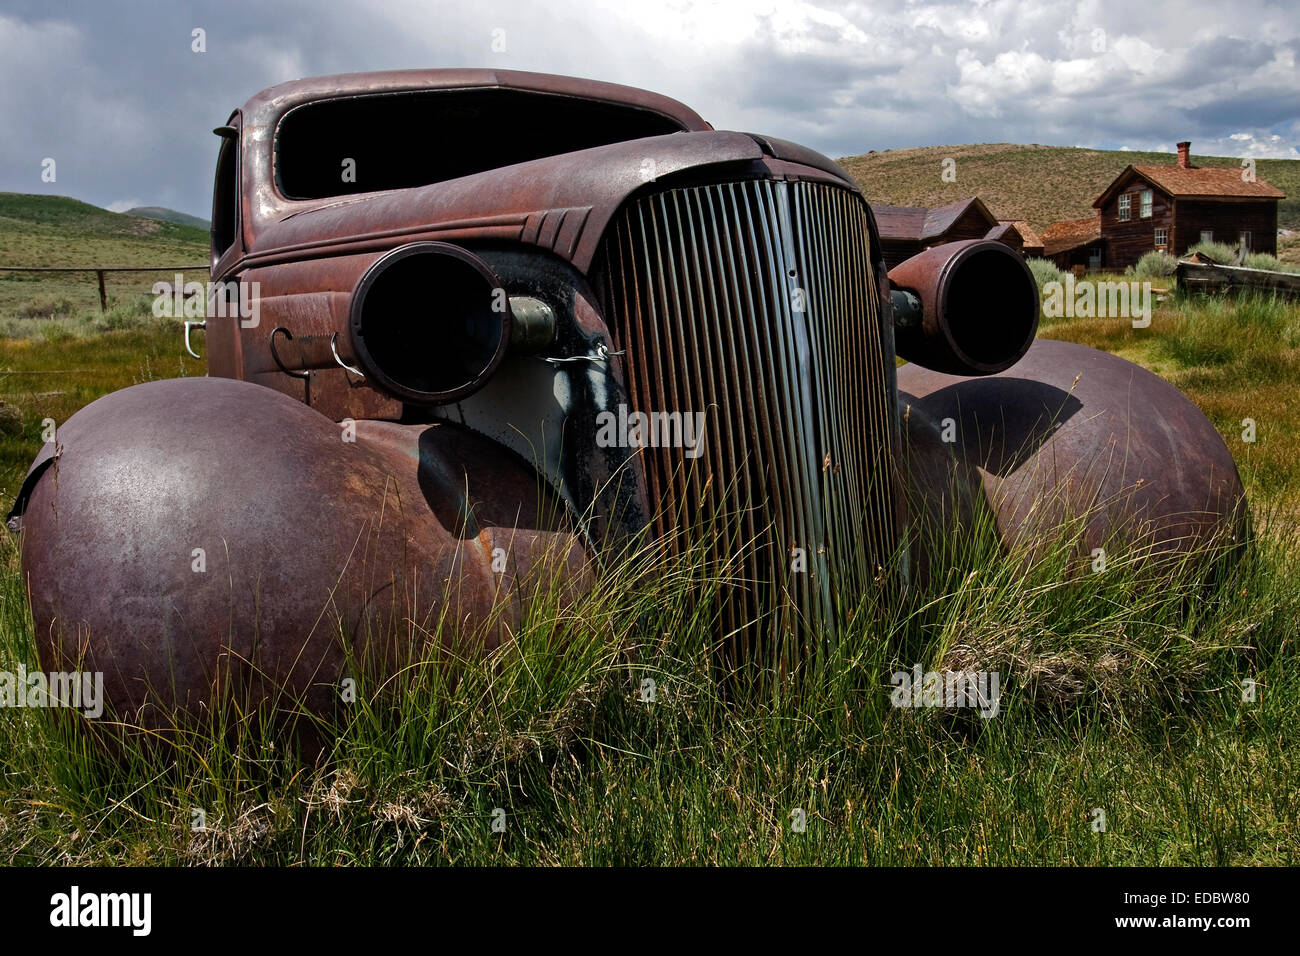 Verrostet Chevrolet, 1930er Jahre, Geisterstadt, Altgold Bergbaustadt, Bodie State Historic Park, Bodie, Kalifornien, Vereinigte Staaten von Amerika Stockfoto